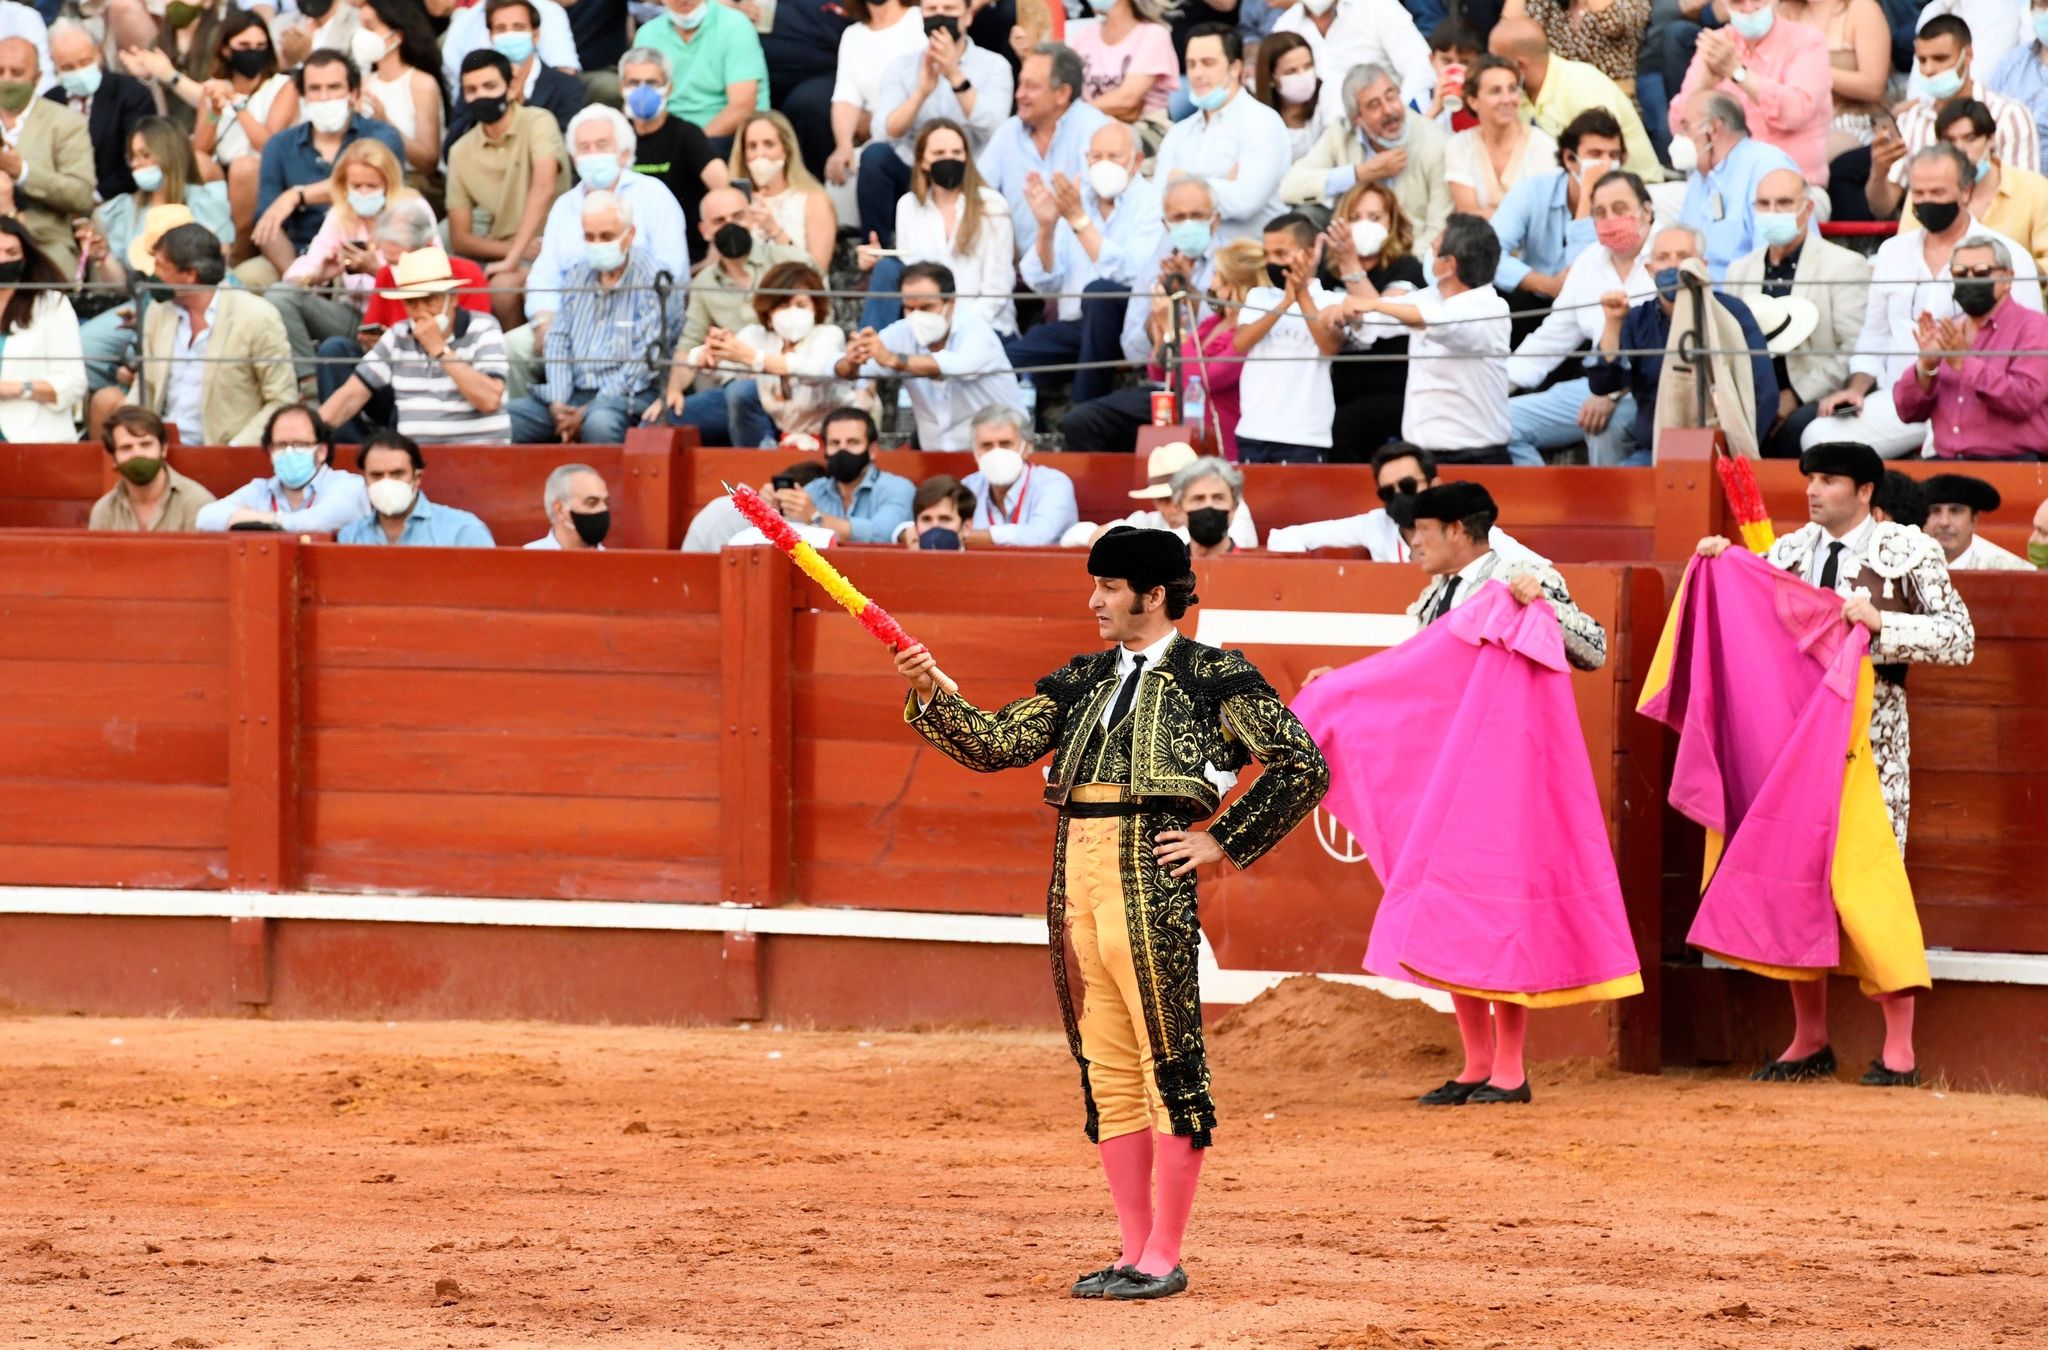 Comunicado oficial del aplazamiento de la Feria de Granada: "Somos conscientes de la incertidumbre creada"